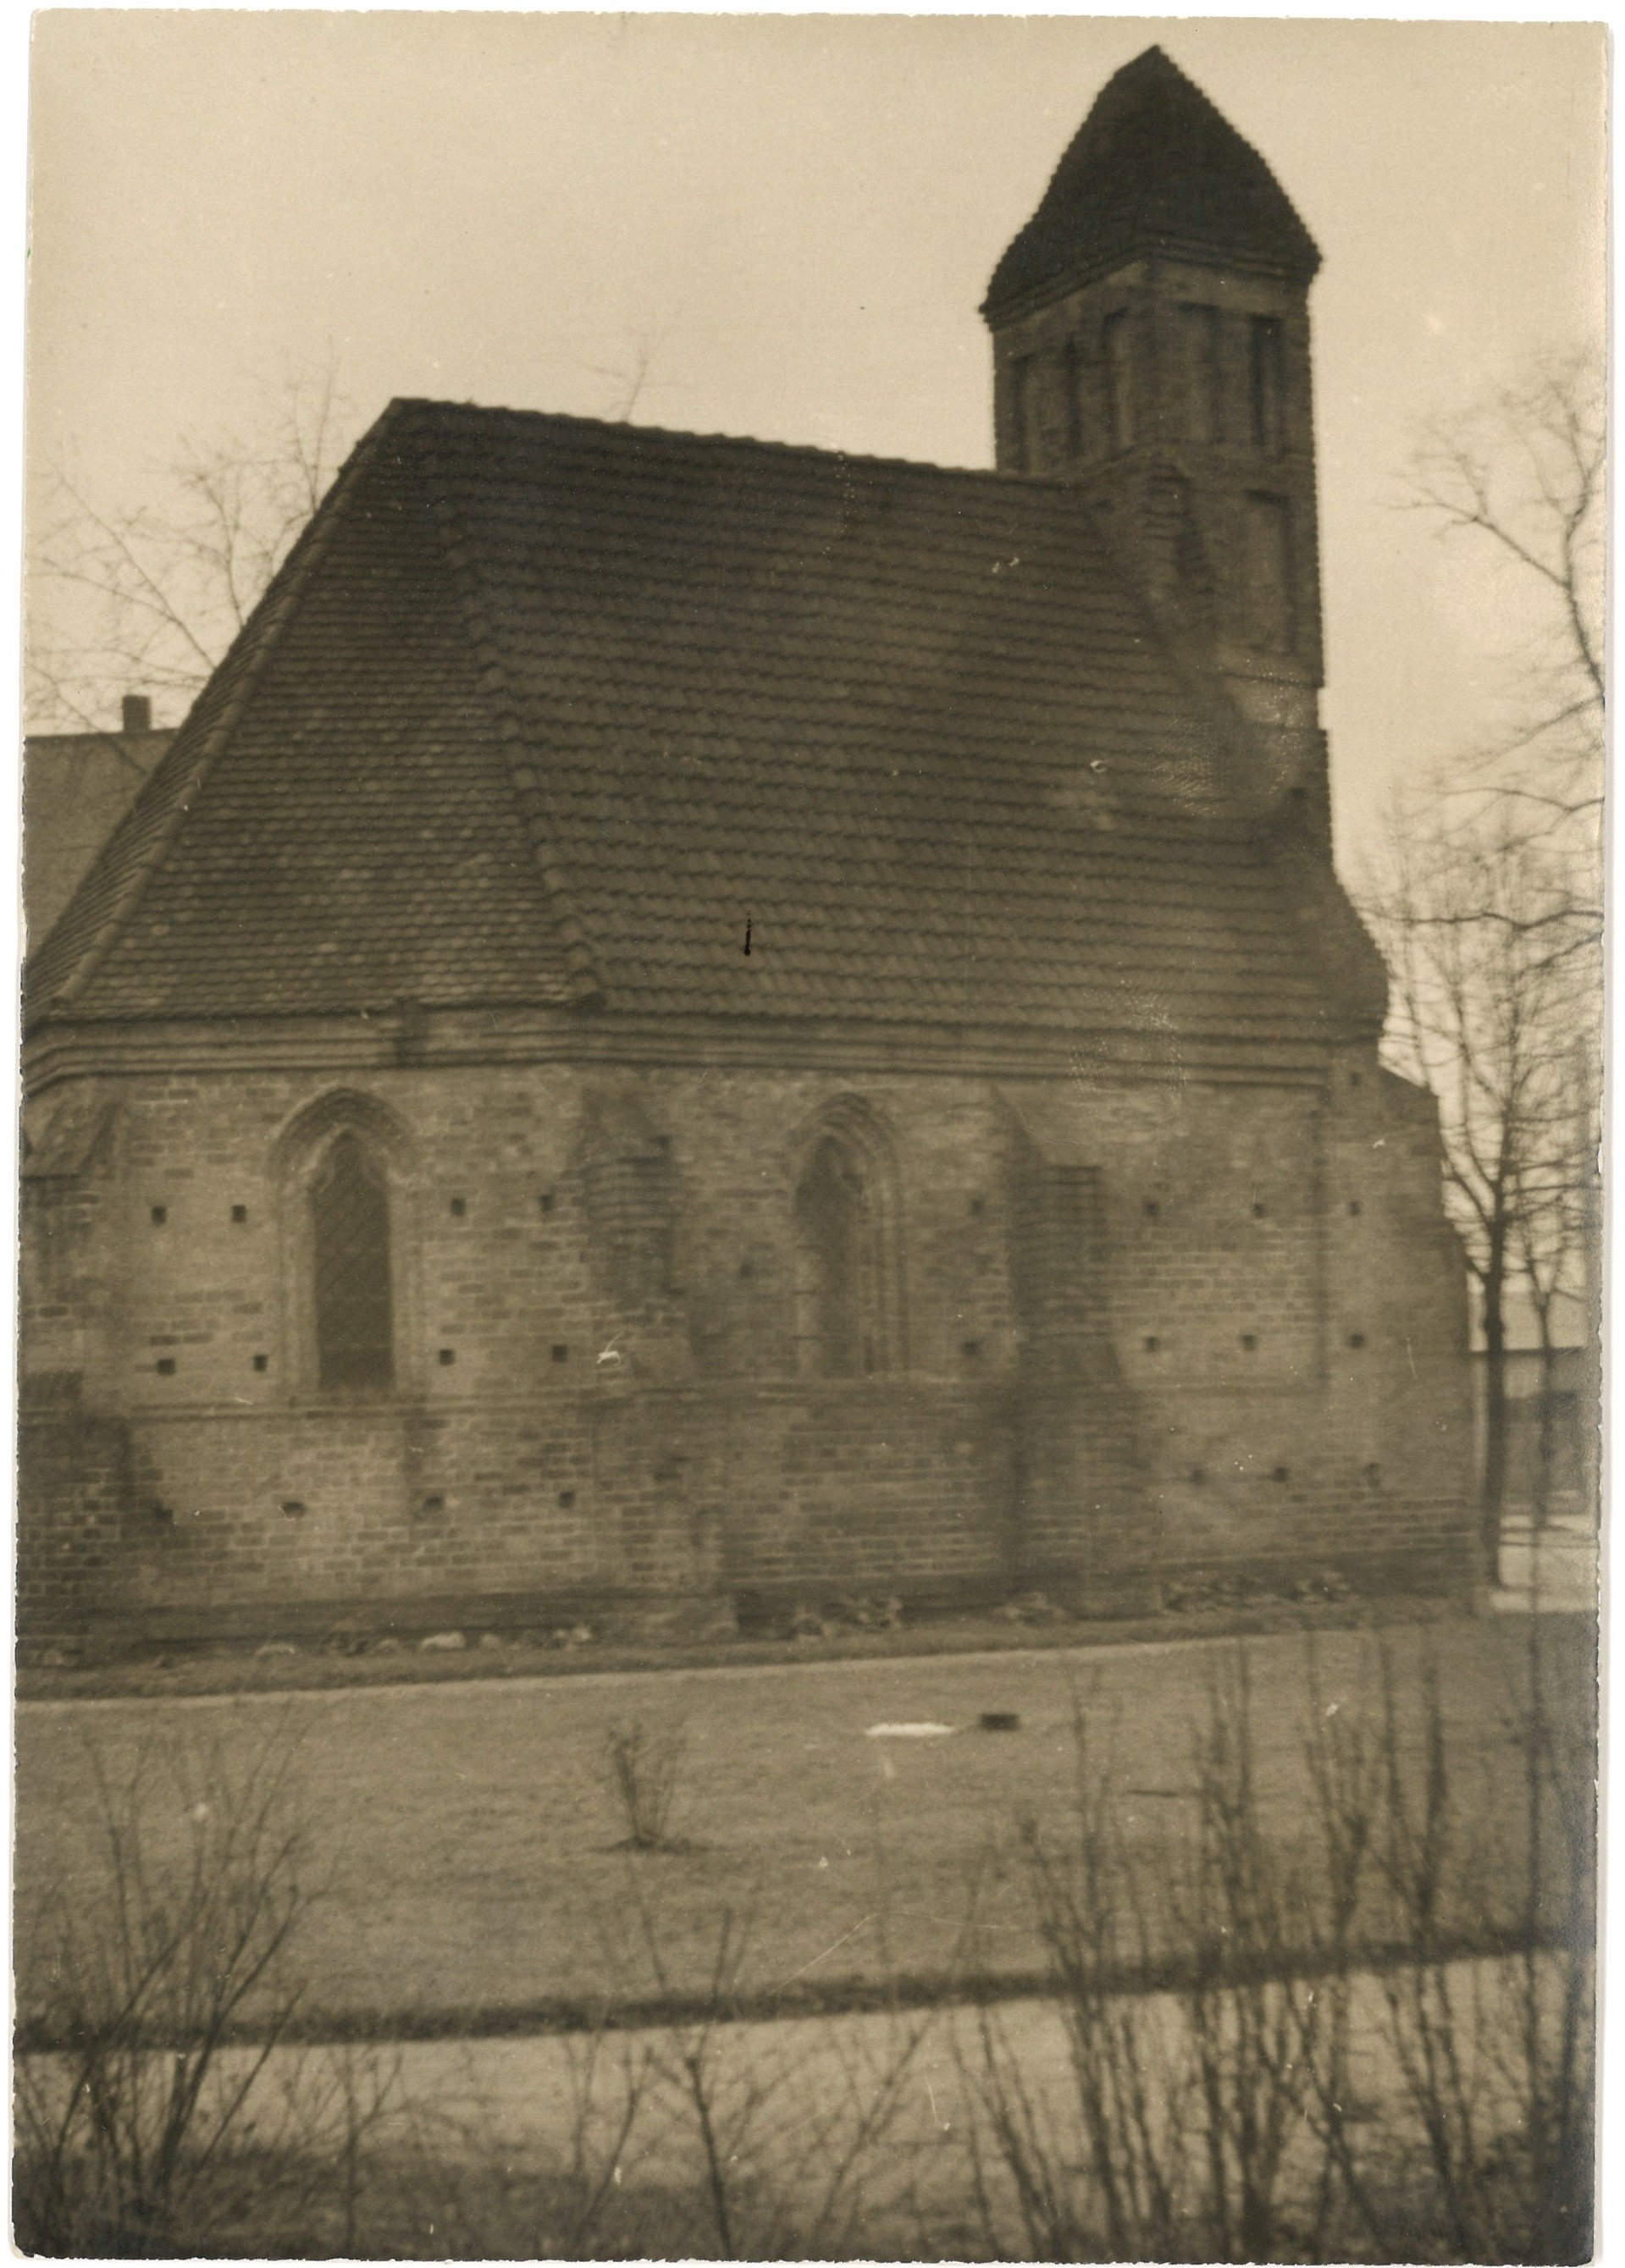 Eberswalde: St. Georgskapelle von Norden (Landesgeschichtliche Vereinigung für die Mark Brandenburg e.V., Archiv CC BY)